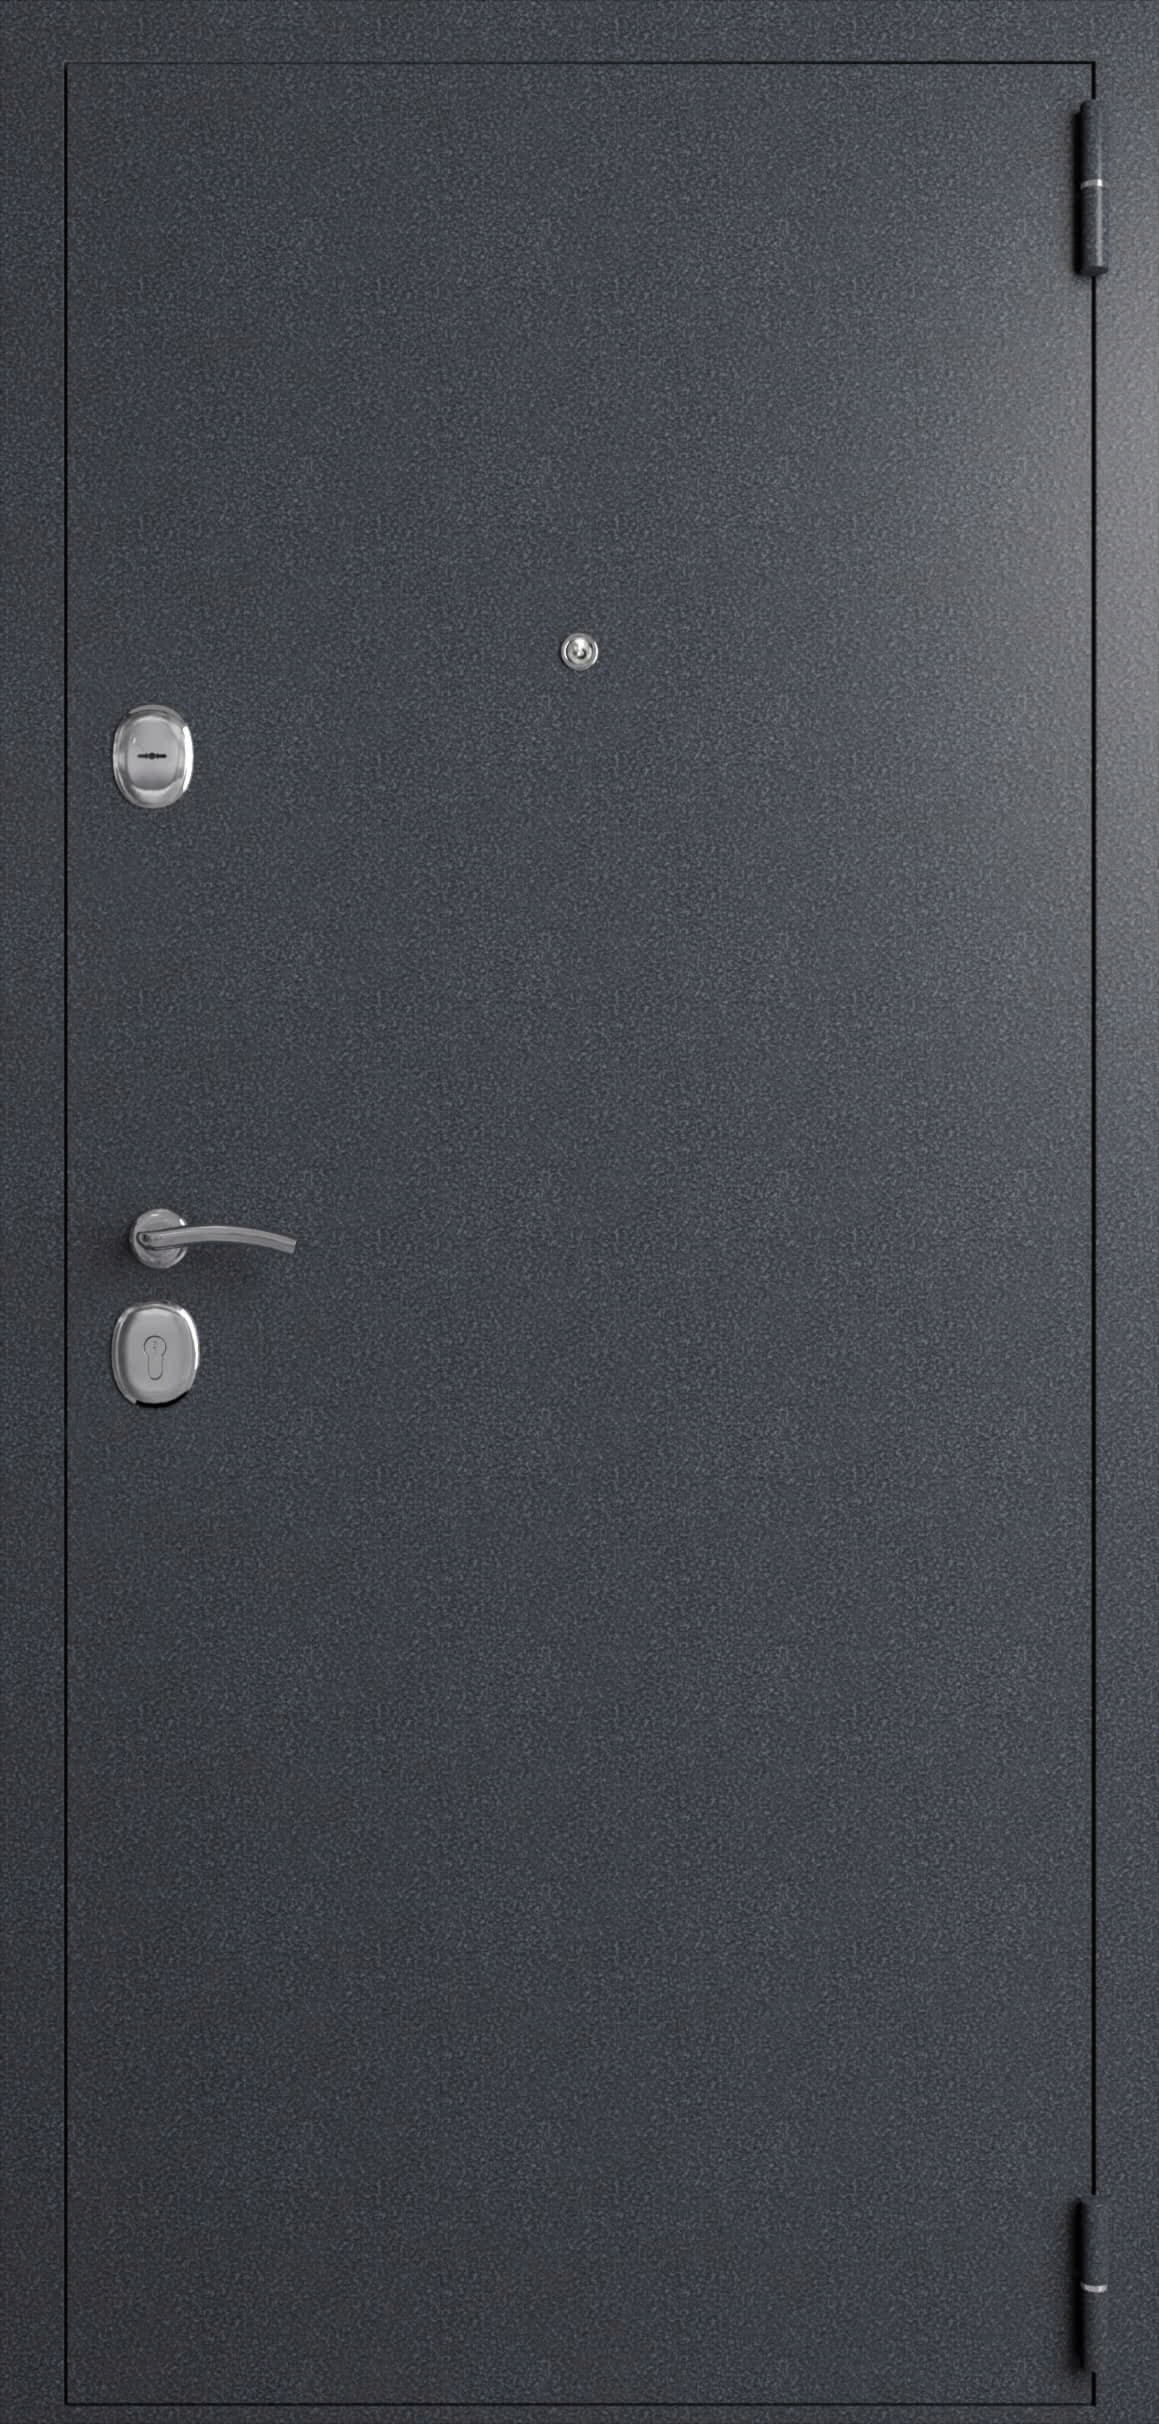 Металлическая дверь «Эко стандарт». Вид внутренней отделки  Вид внешней отделки: Антик серебро Cтандартный наличник